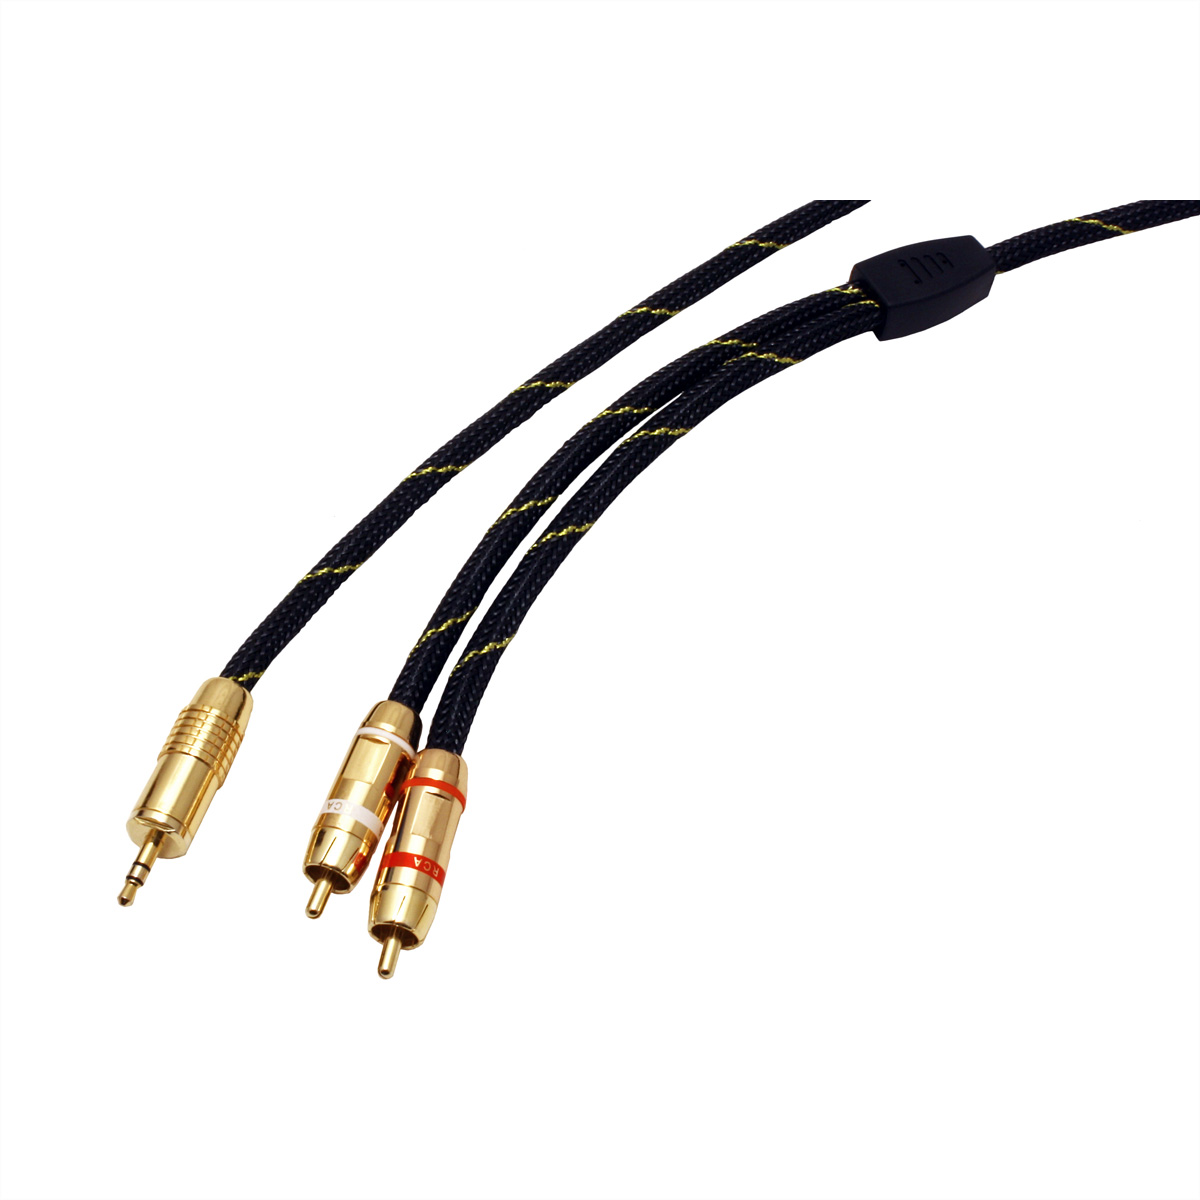 GOLD Audio-Verbindungskabel 3,5mm 5 3,5mm-zu-Cinch - 2x Stereo ST/ST, Kabel, m Cinch, ROLINE